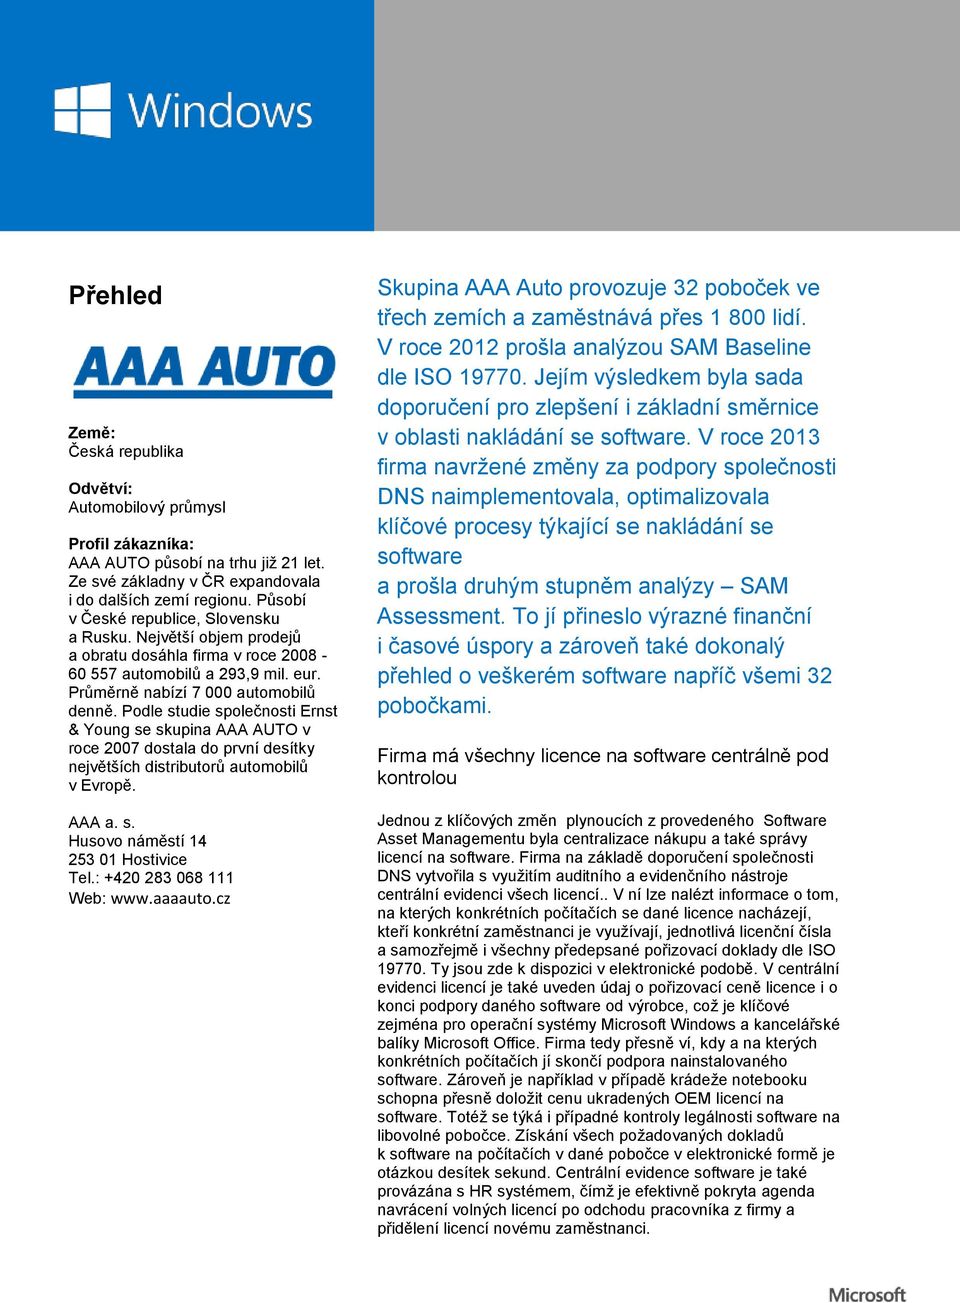 Podle studie společnosti Ernst & Young se skupina AAA AUTO v roce 2007 dostala do první desítky největších distributorů automobilů v Evropě. AAA a. s. Husovo náměstí 14 253 01 Hostivice Tel.